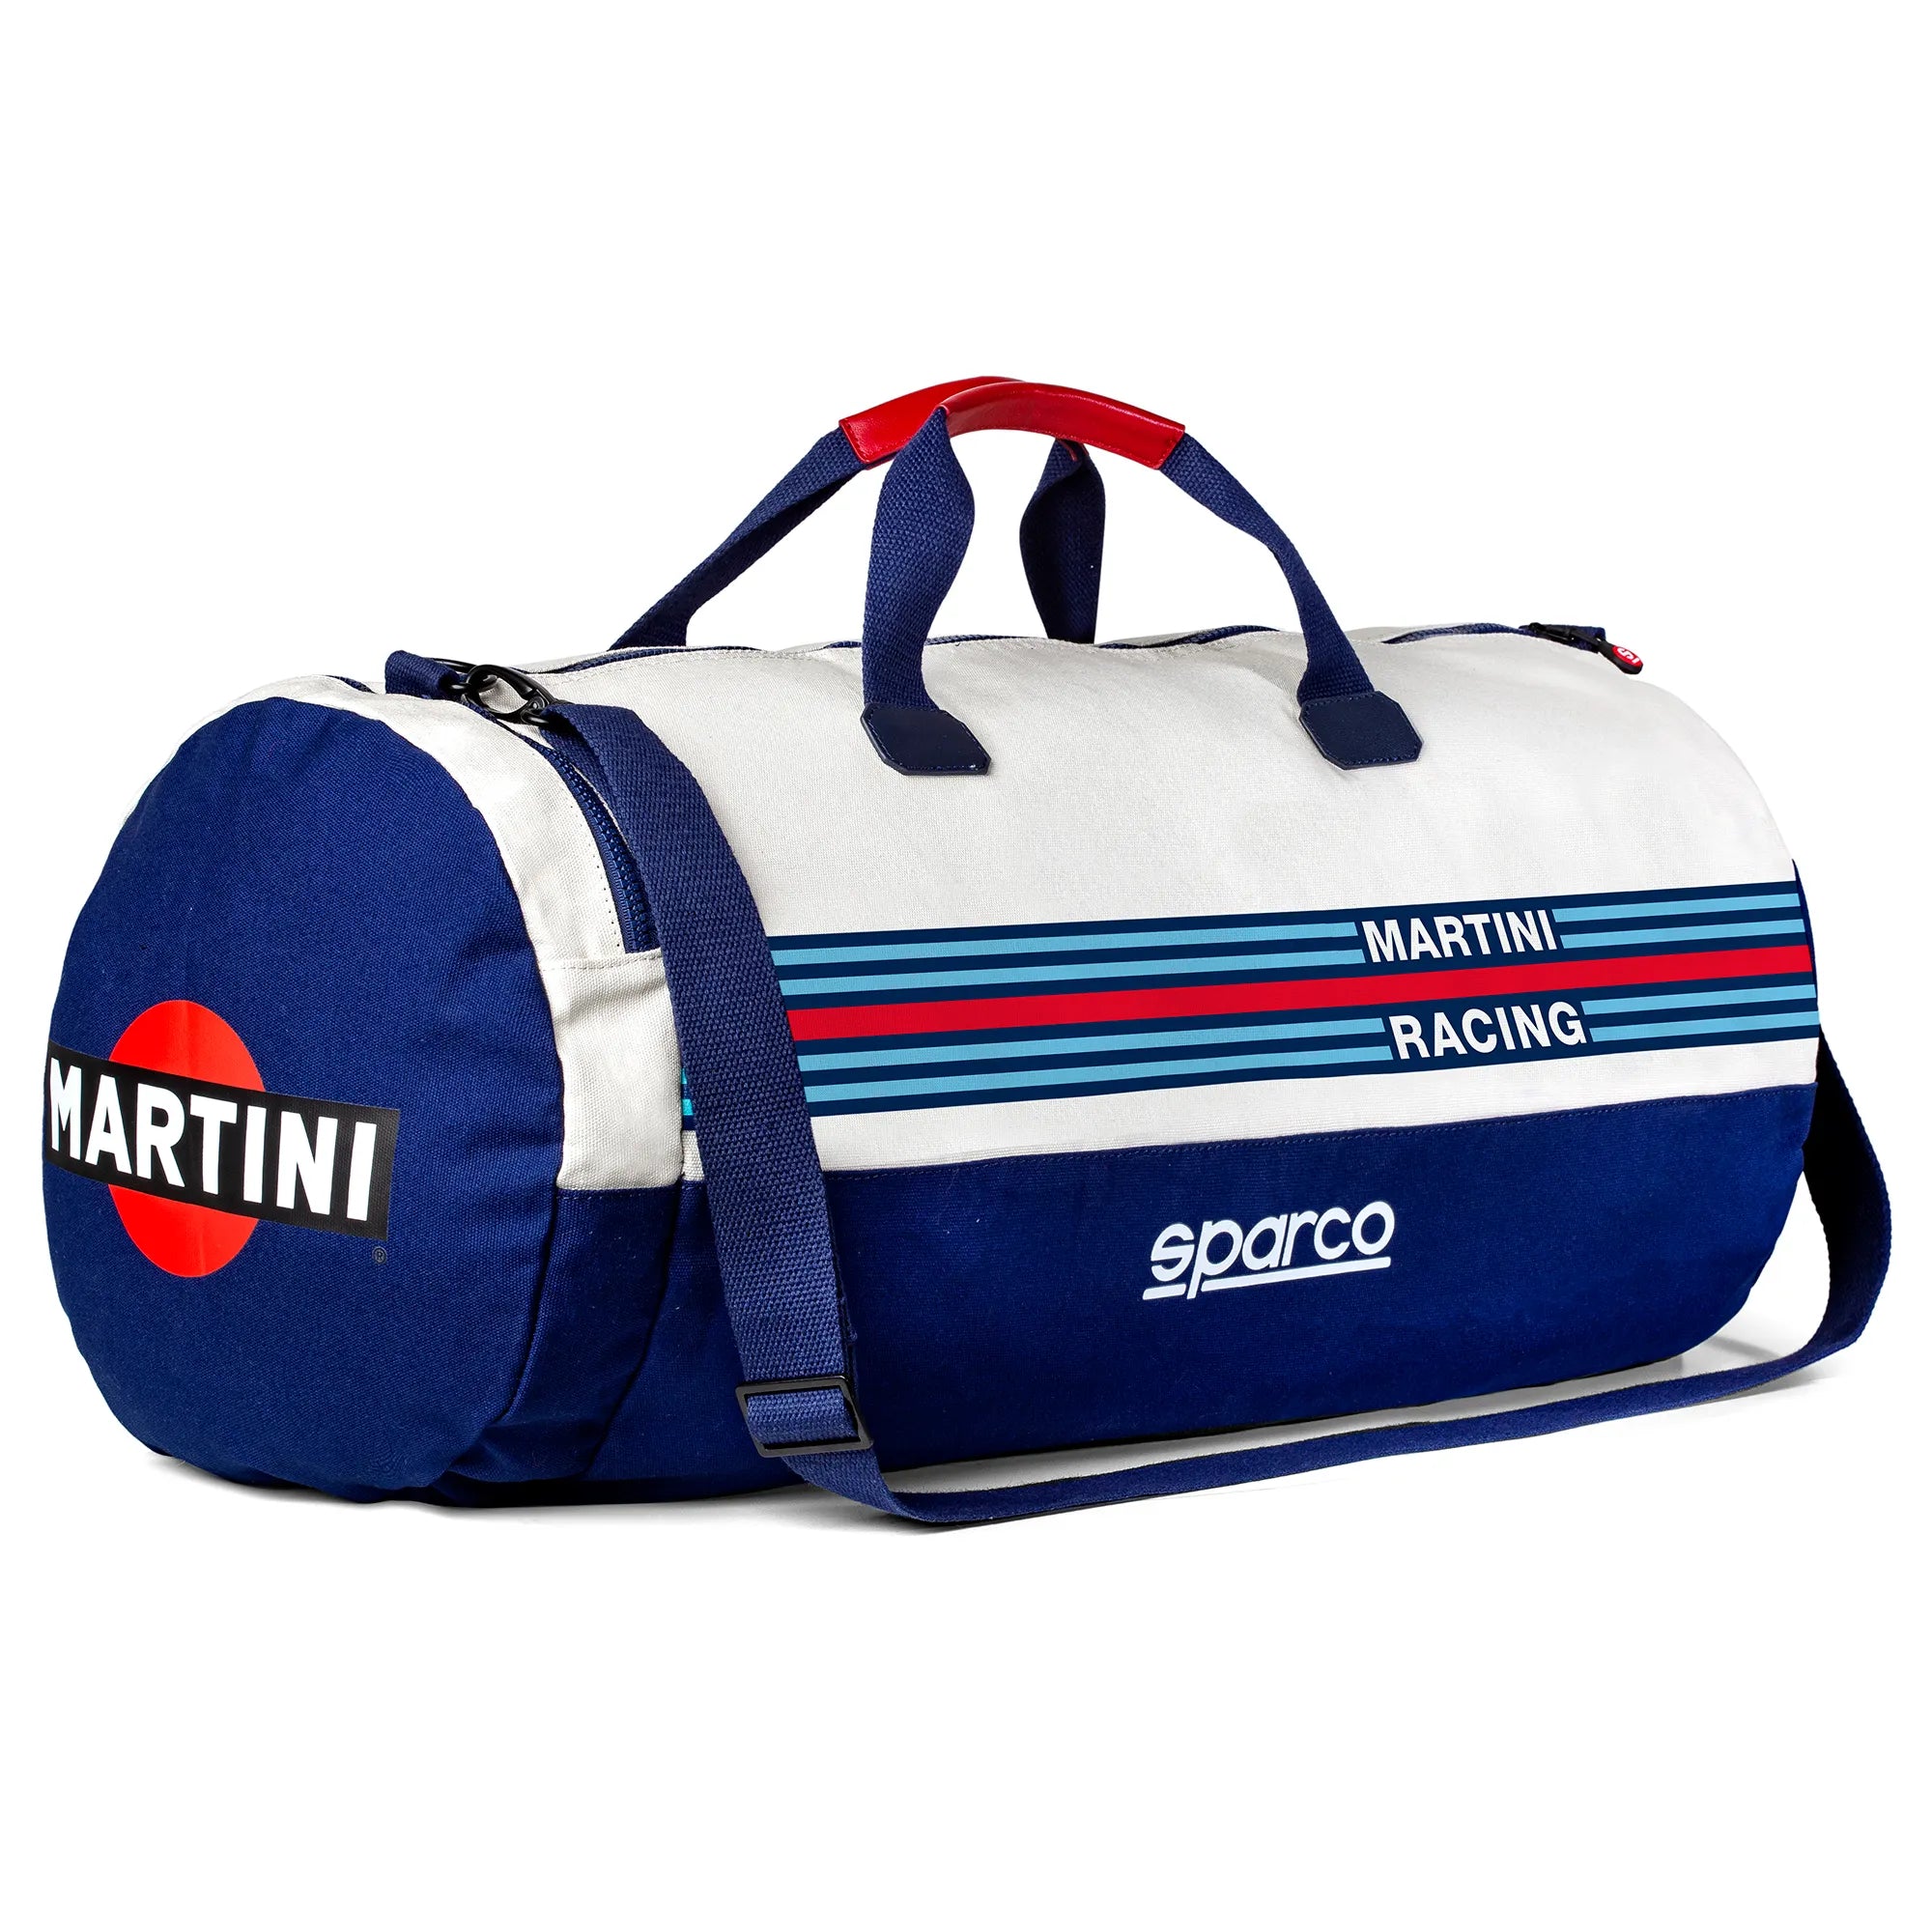 Borsone Sparco Martini Racing SPORTBAG